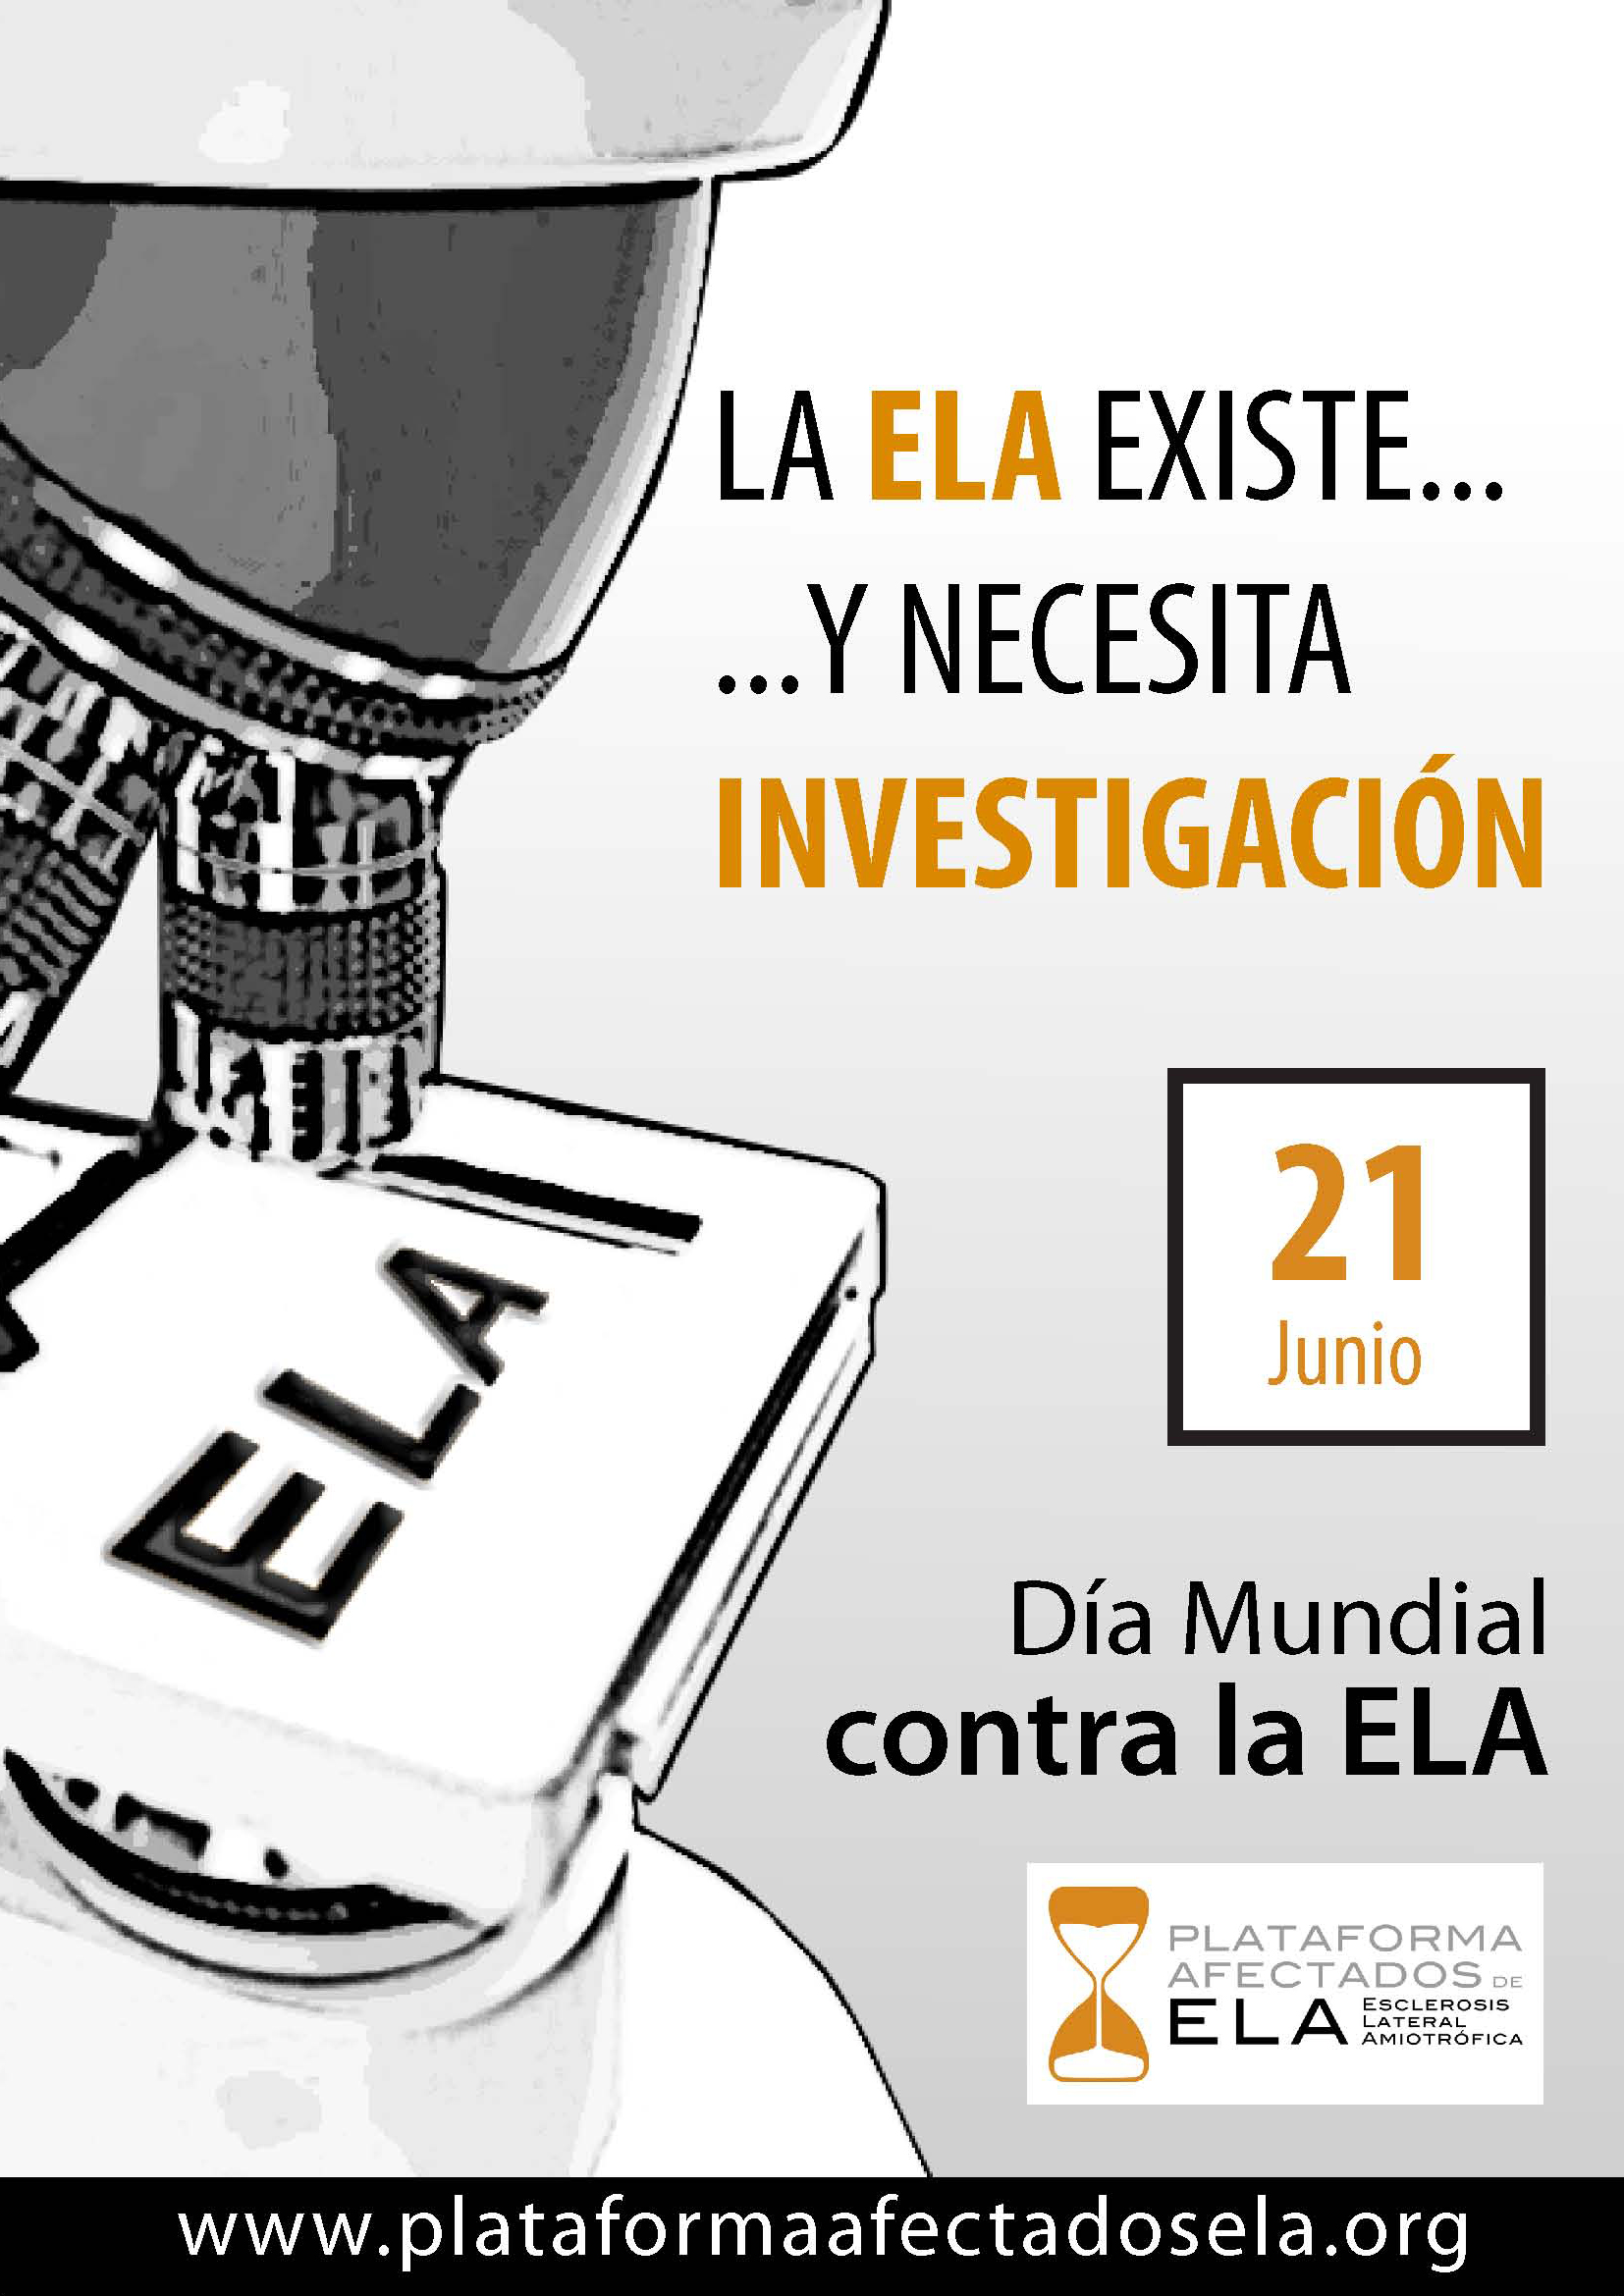 Dia Mundial contra la ELA 21 junio